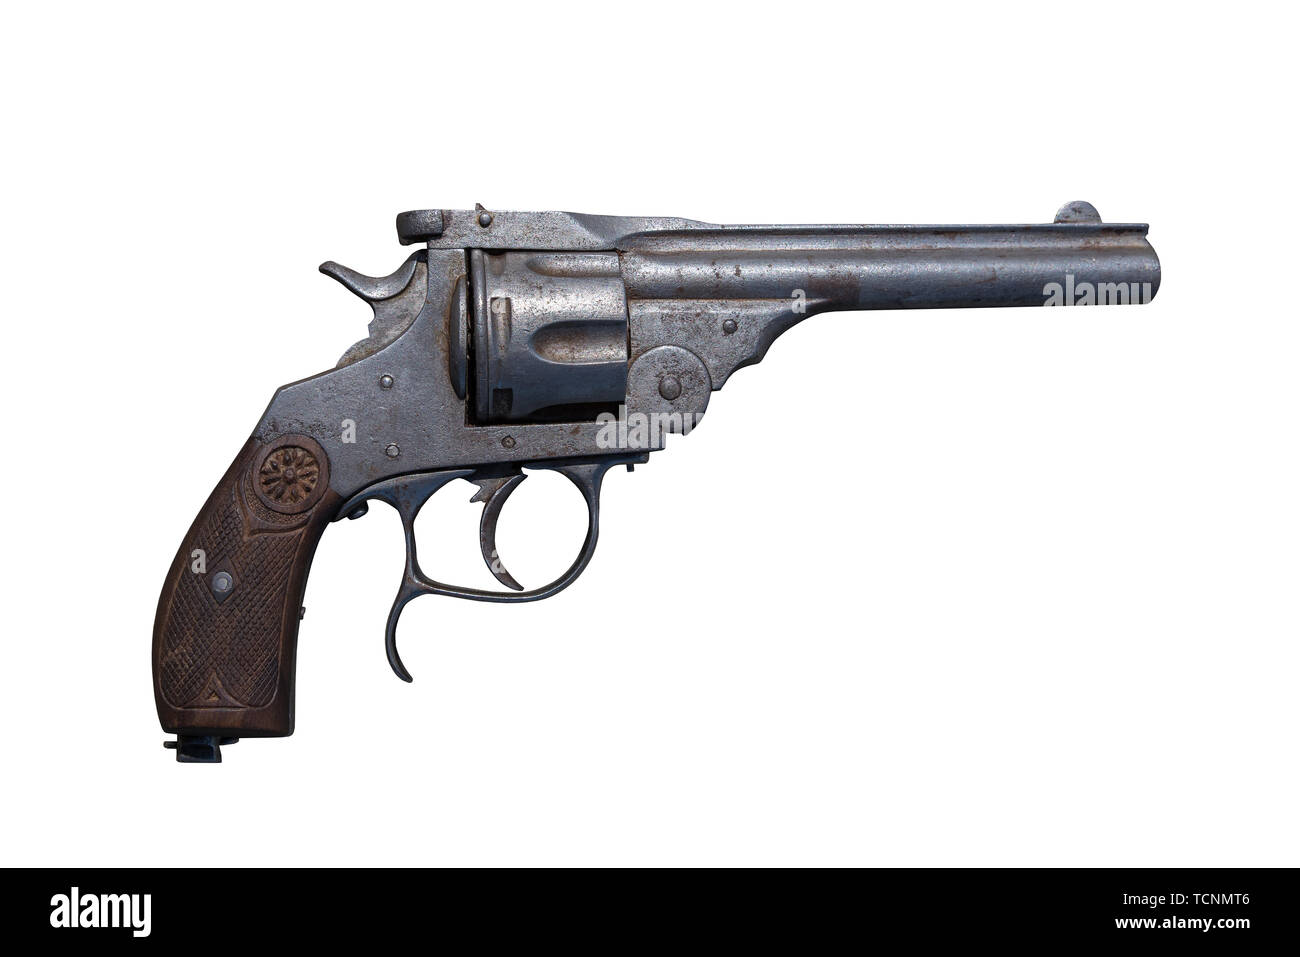 Pistola revolver. Arma de fuego antigua. Foto de stock